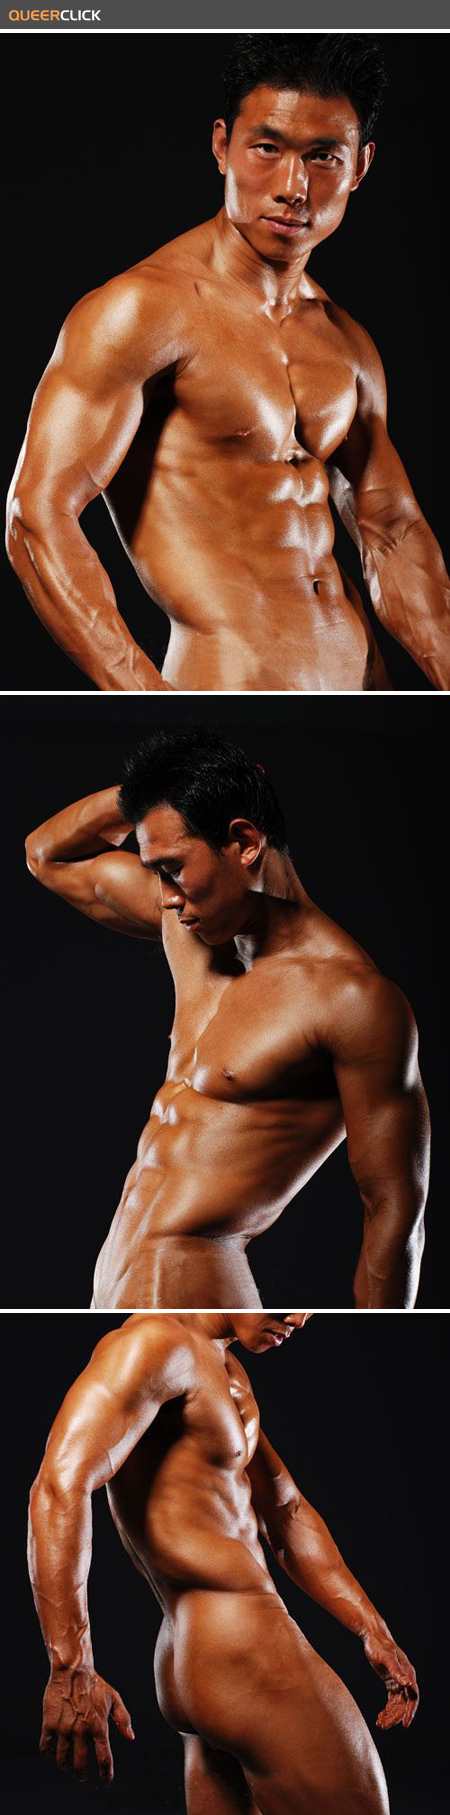 sexy_asian_bodybuilder_001.jpg